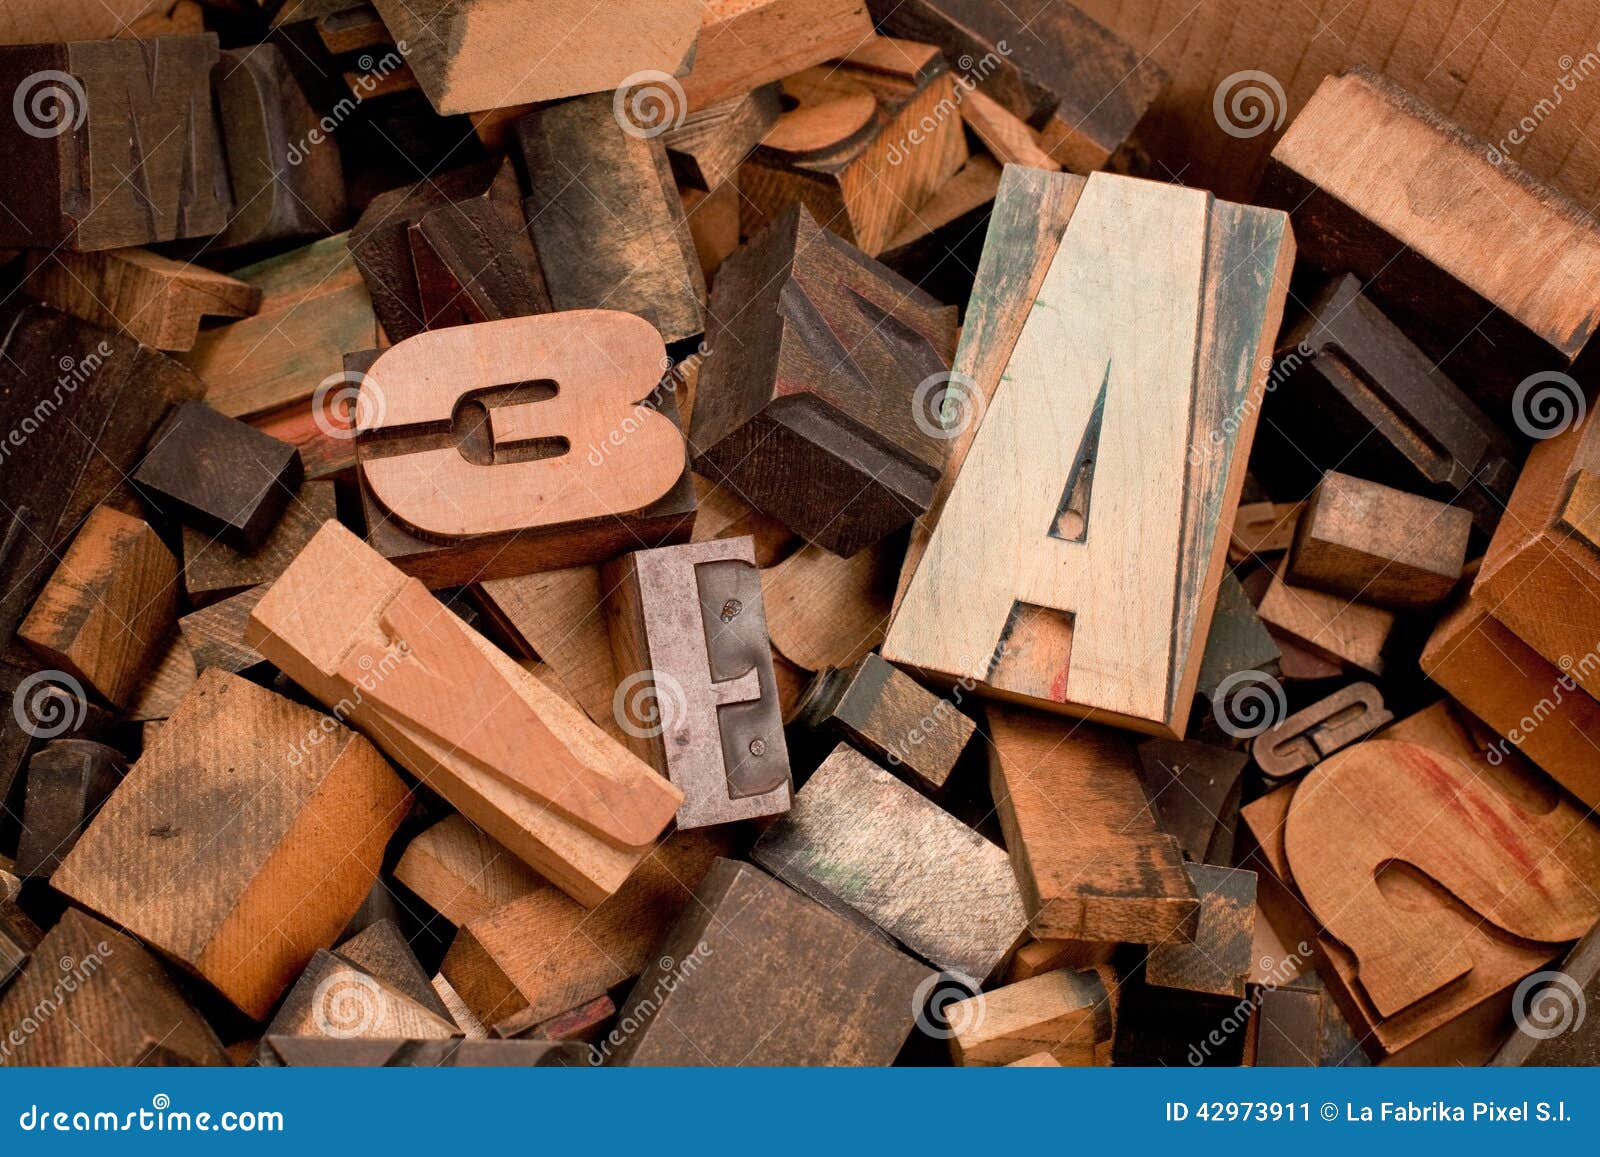 wooden typescript letters inside a box